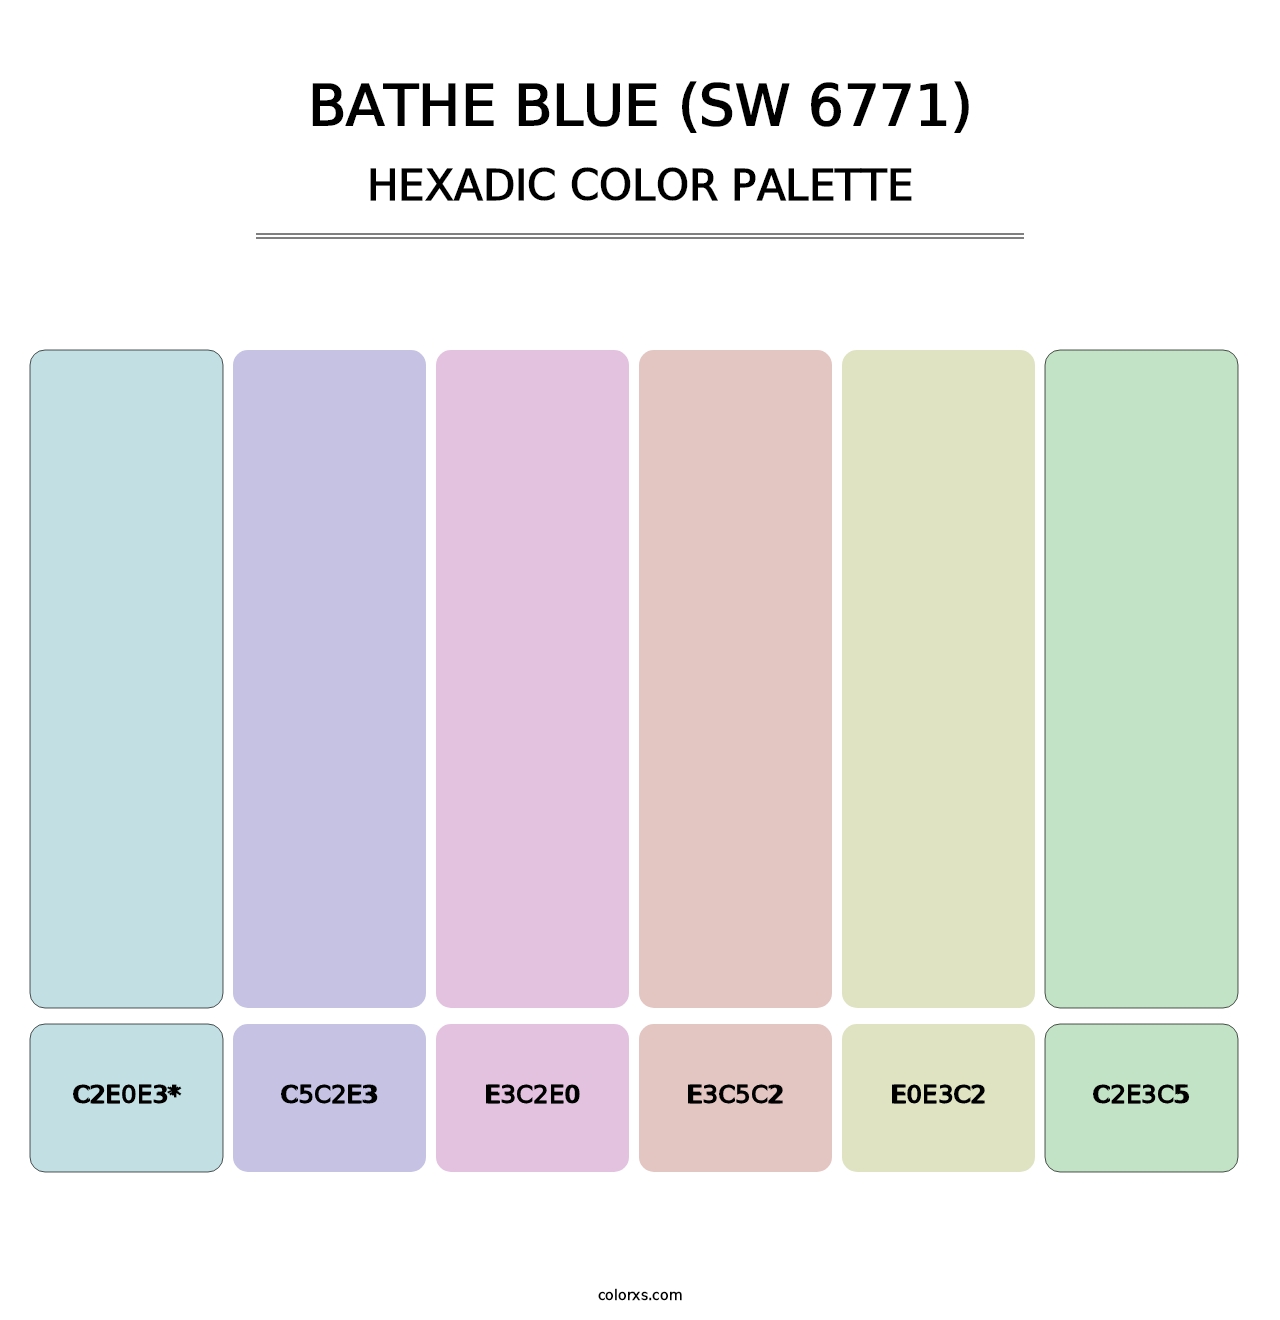 Bathe Blue (SW 6771) - Hexadic Color Palette